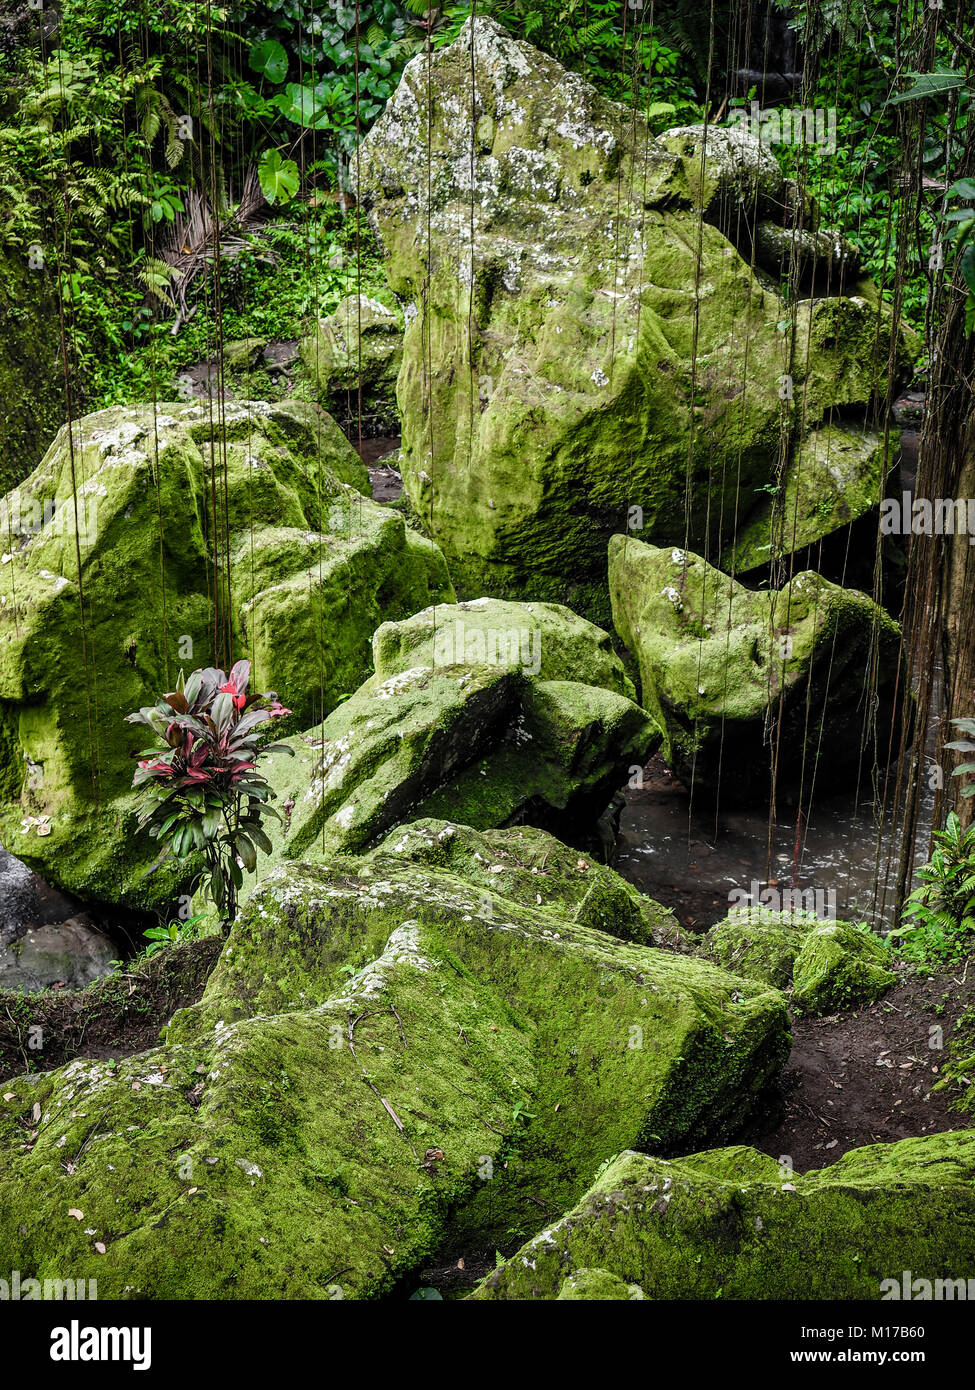 Green Moss Patches auf großen Felsen. Moos bedeckt riesigen Steinen in einem alten tropischen Wald. Konzept der Harmonie. Natur Balance. Ruhe Stockfoto